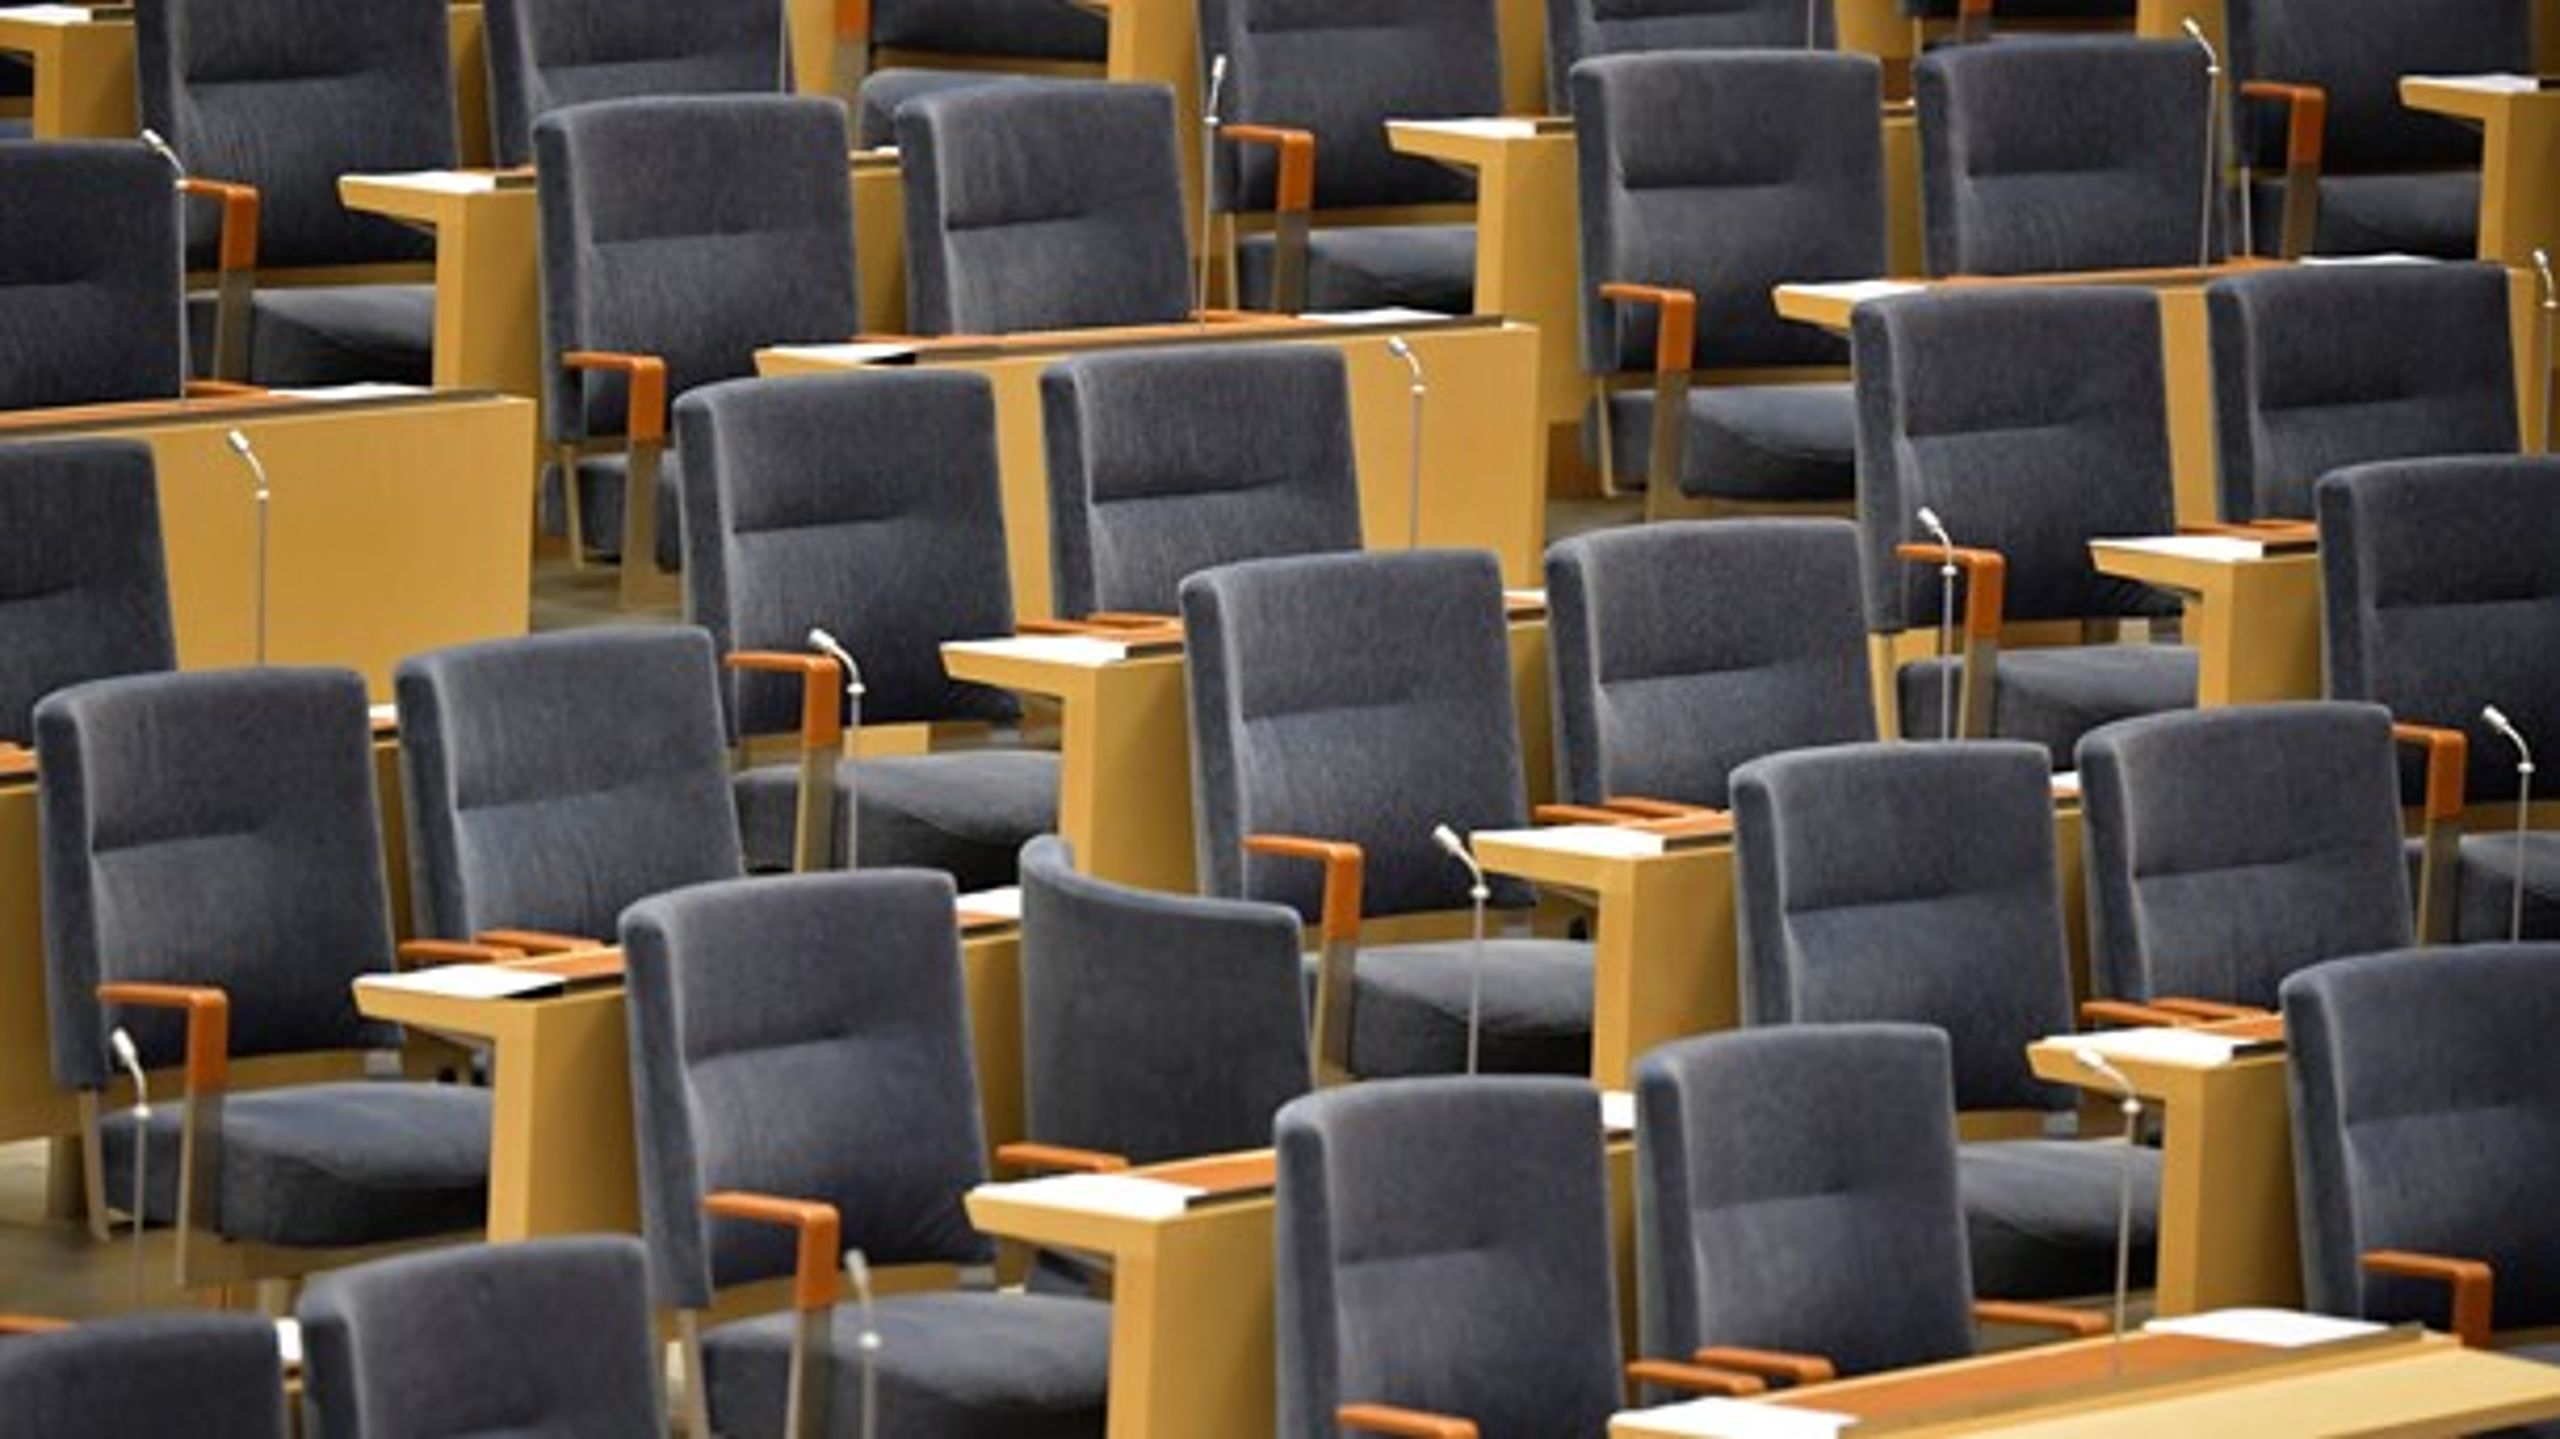 Nästan 300 stolar kommer att stå tomma i riksdagens kammare till den 17 december.